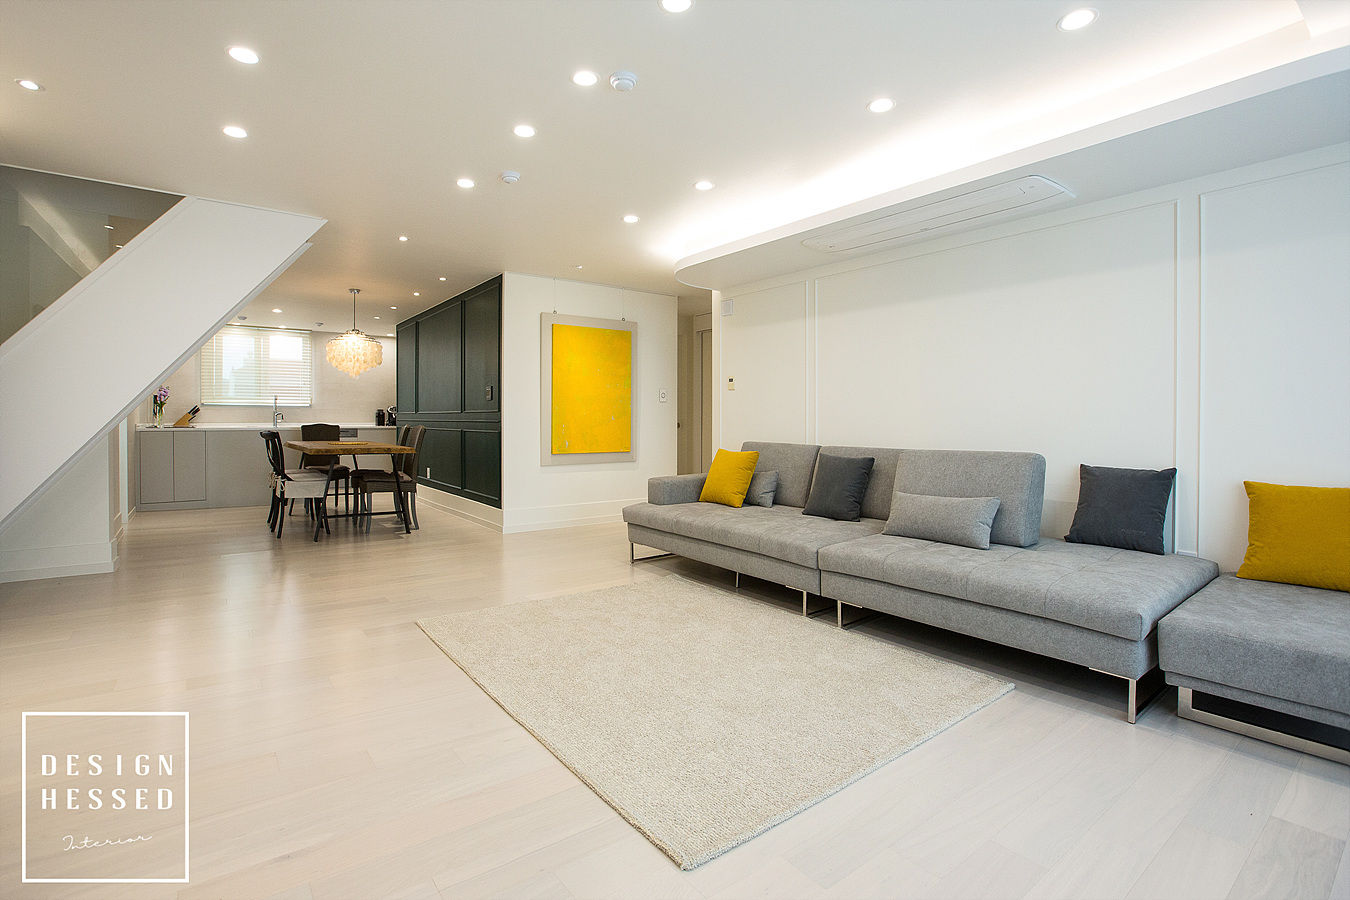 대전 어은동 한빛아파트 51평-거실, 주방, 디자인 헤세드 디자인 헤세드 モダンデザインの リビング